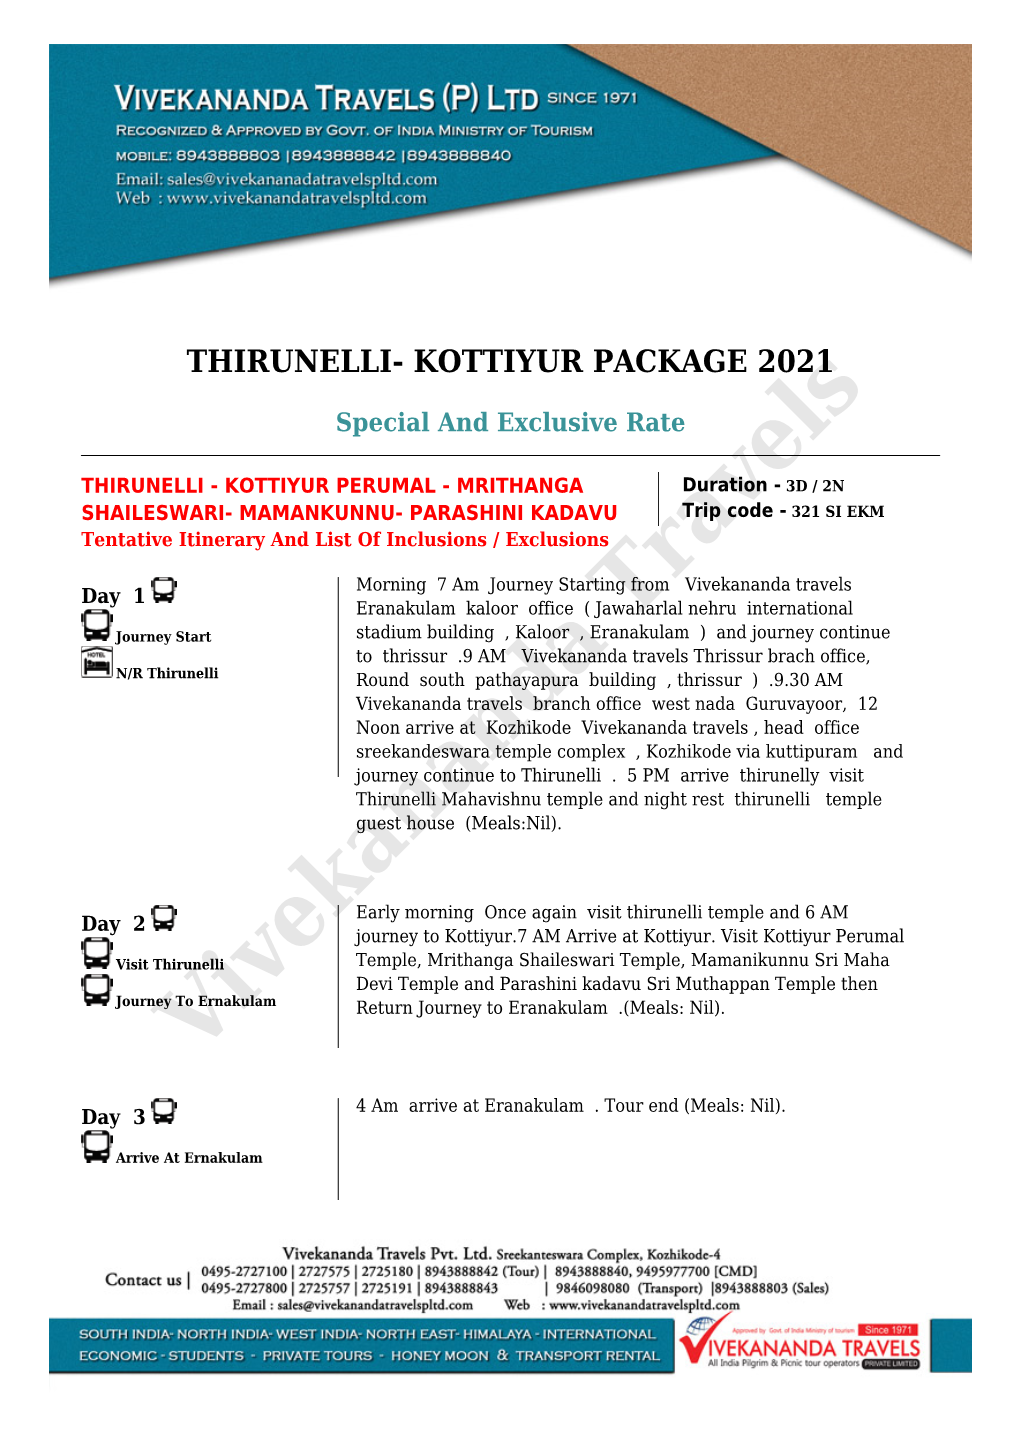 Thirunelli- Kottiyur Package 2021